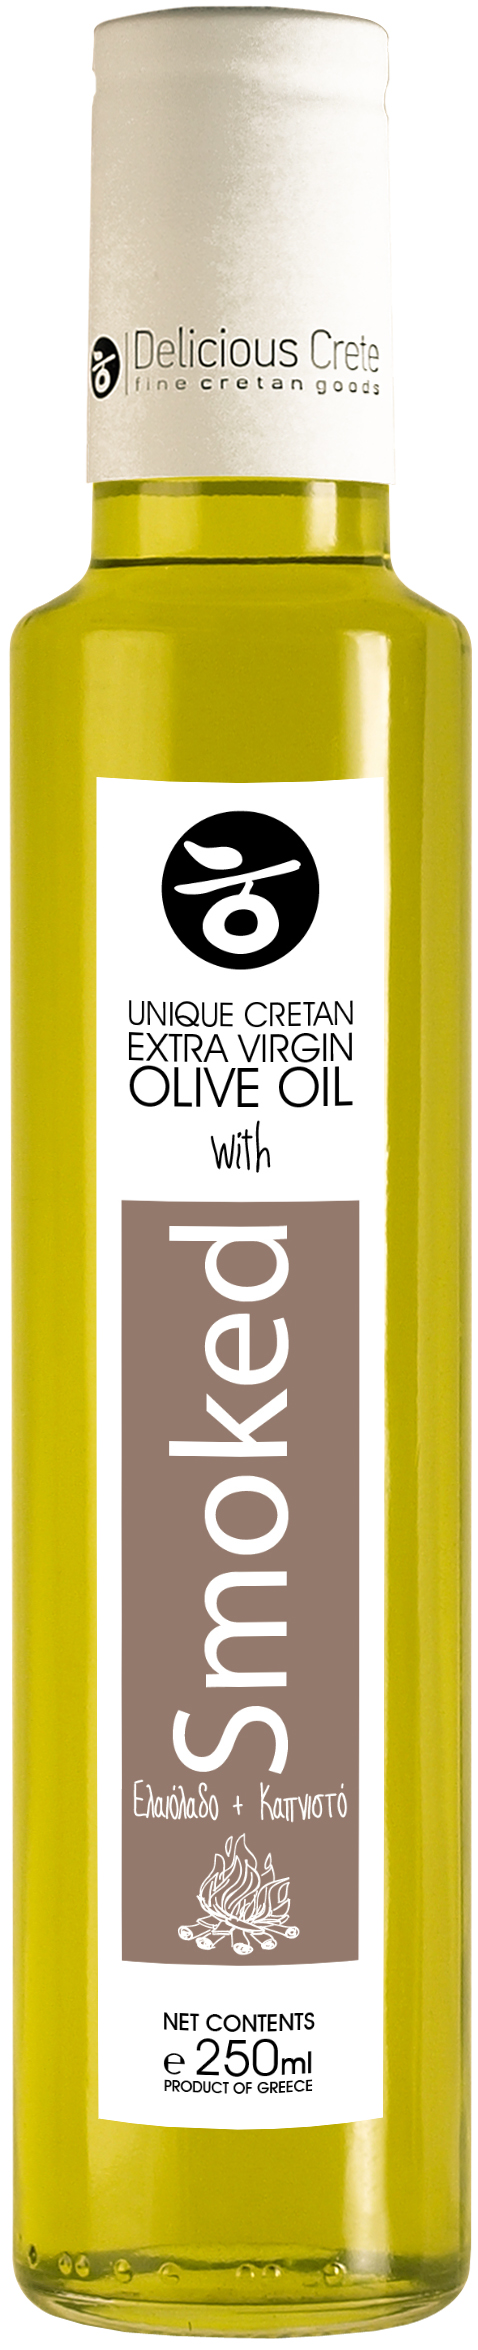 Extra panenský olivový olej uzený na olivovém dřevě 250ml PREMIUM CRETE